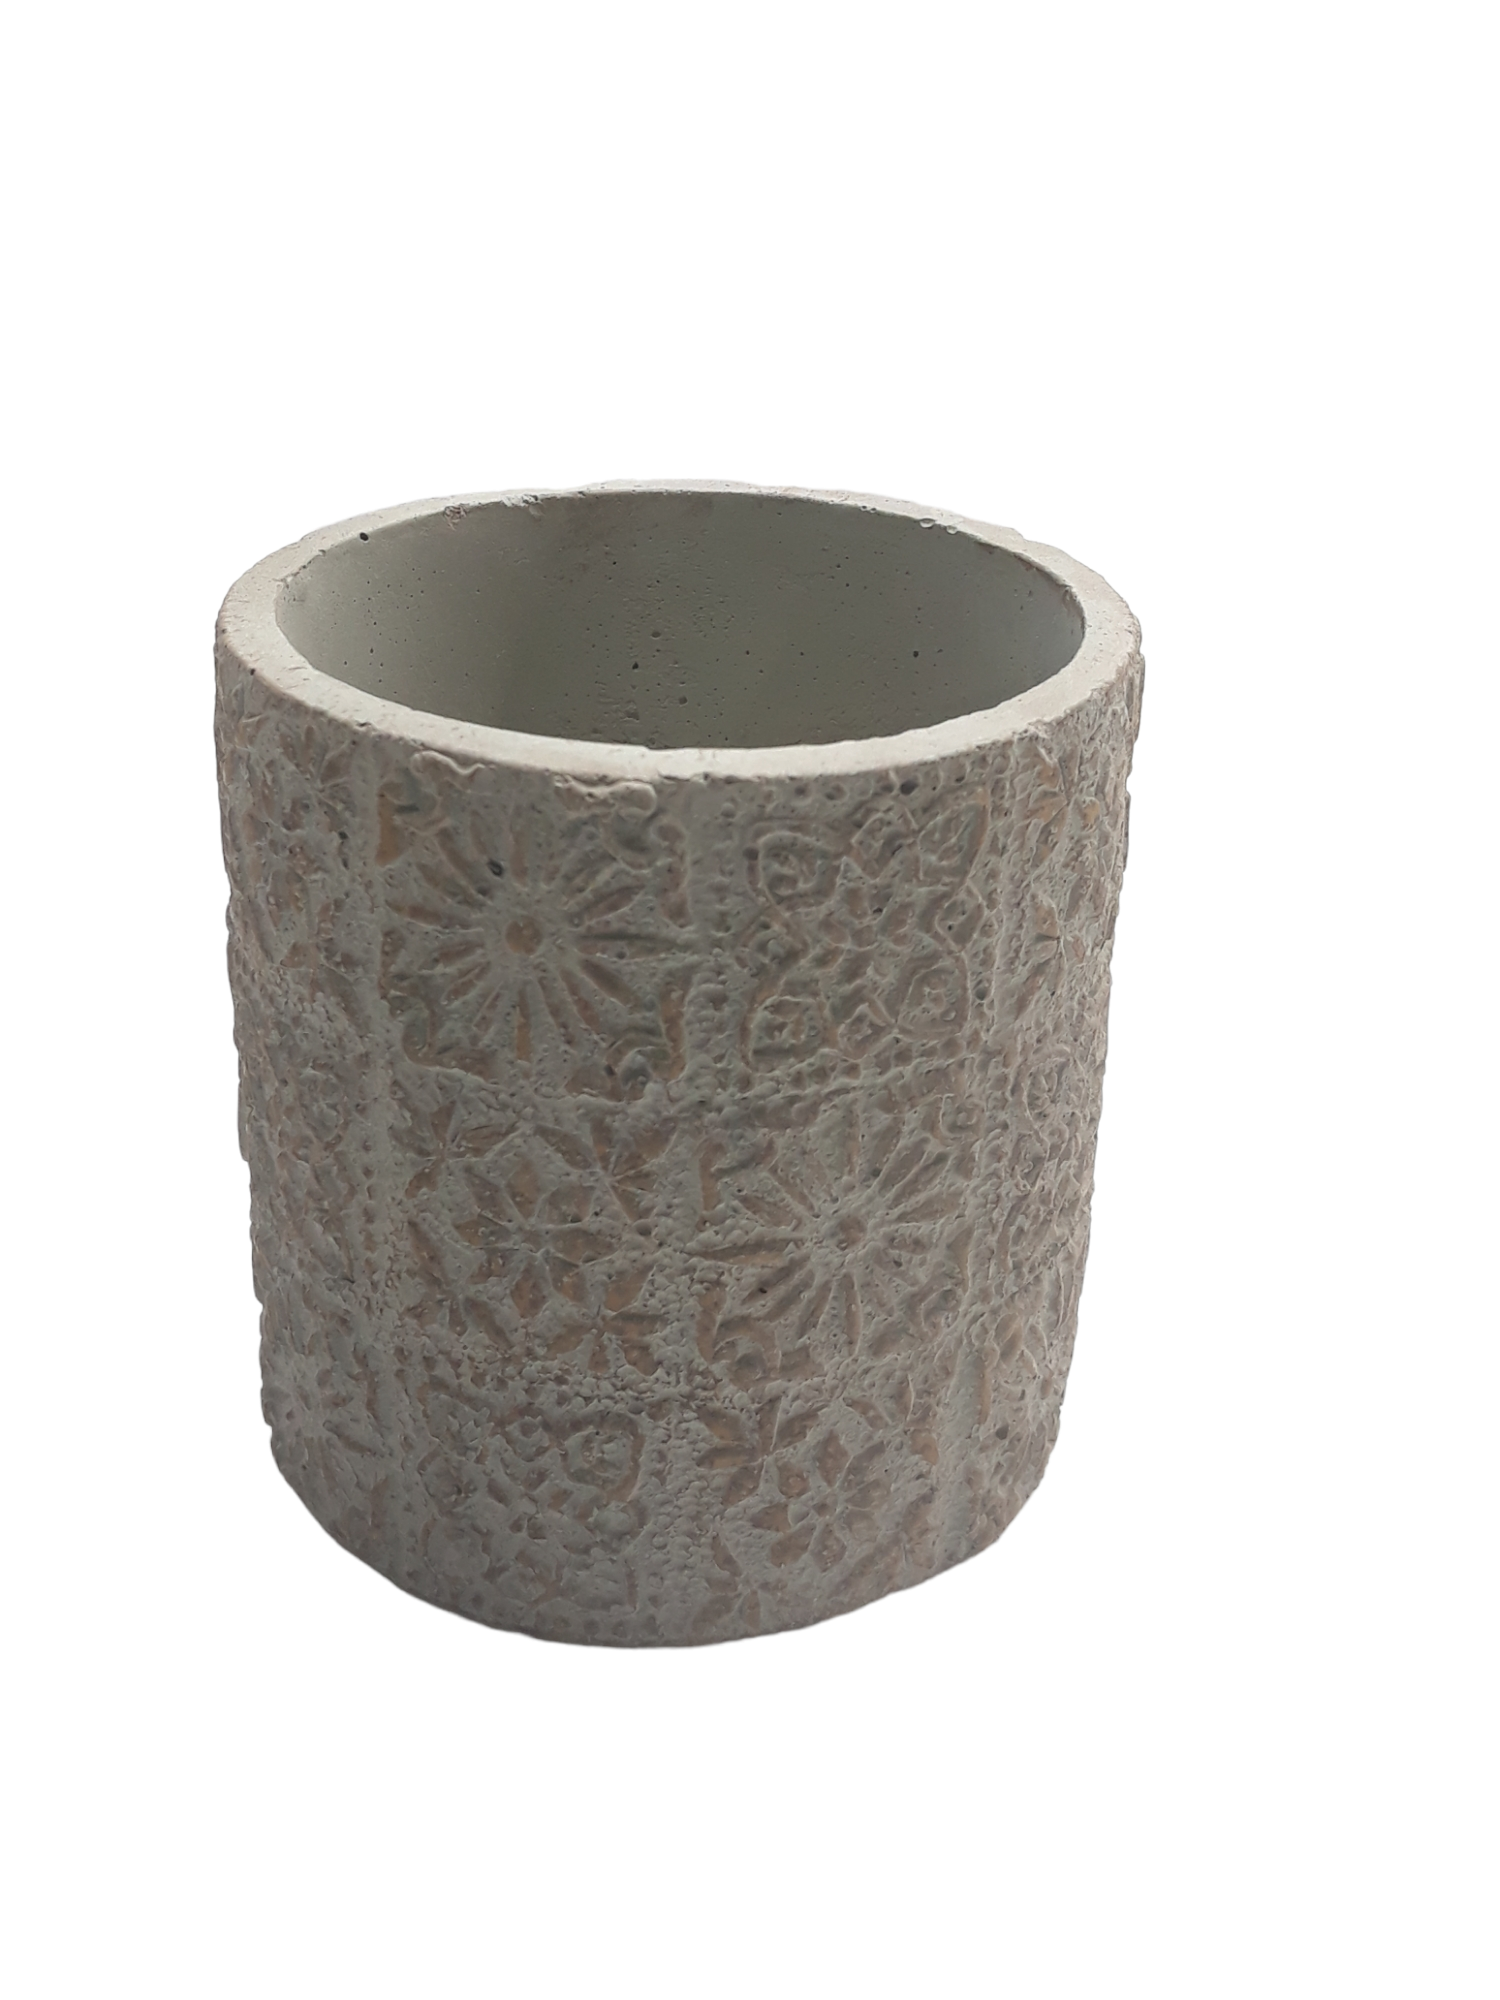 Michael Carr Designs® 3.5" Floral Patchwork Pot - Beige